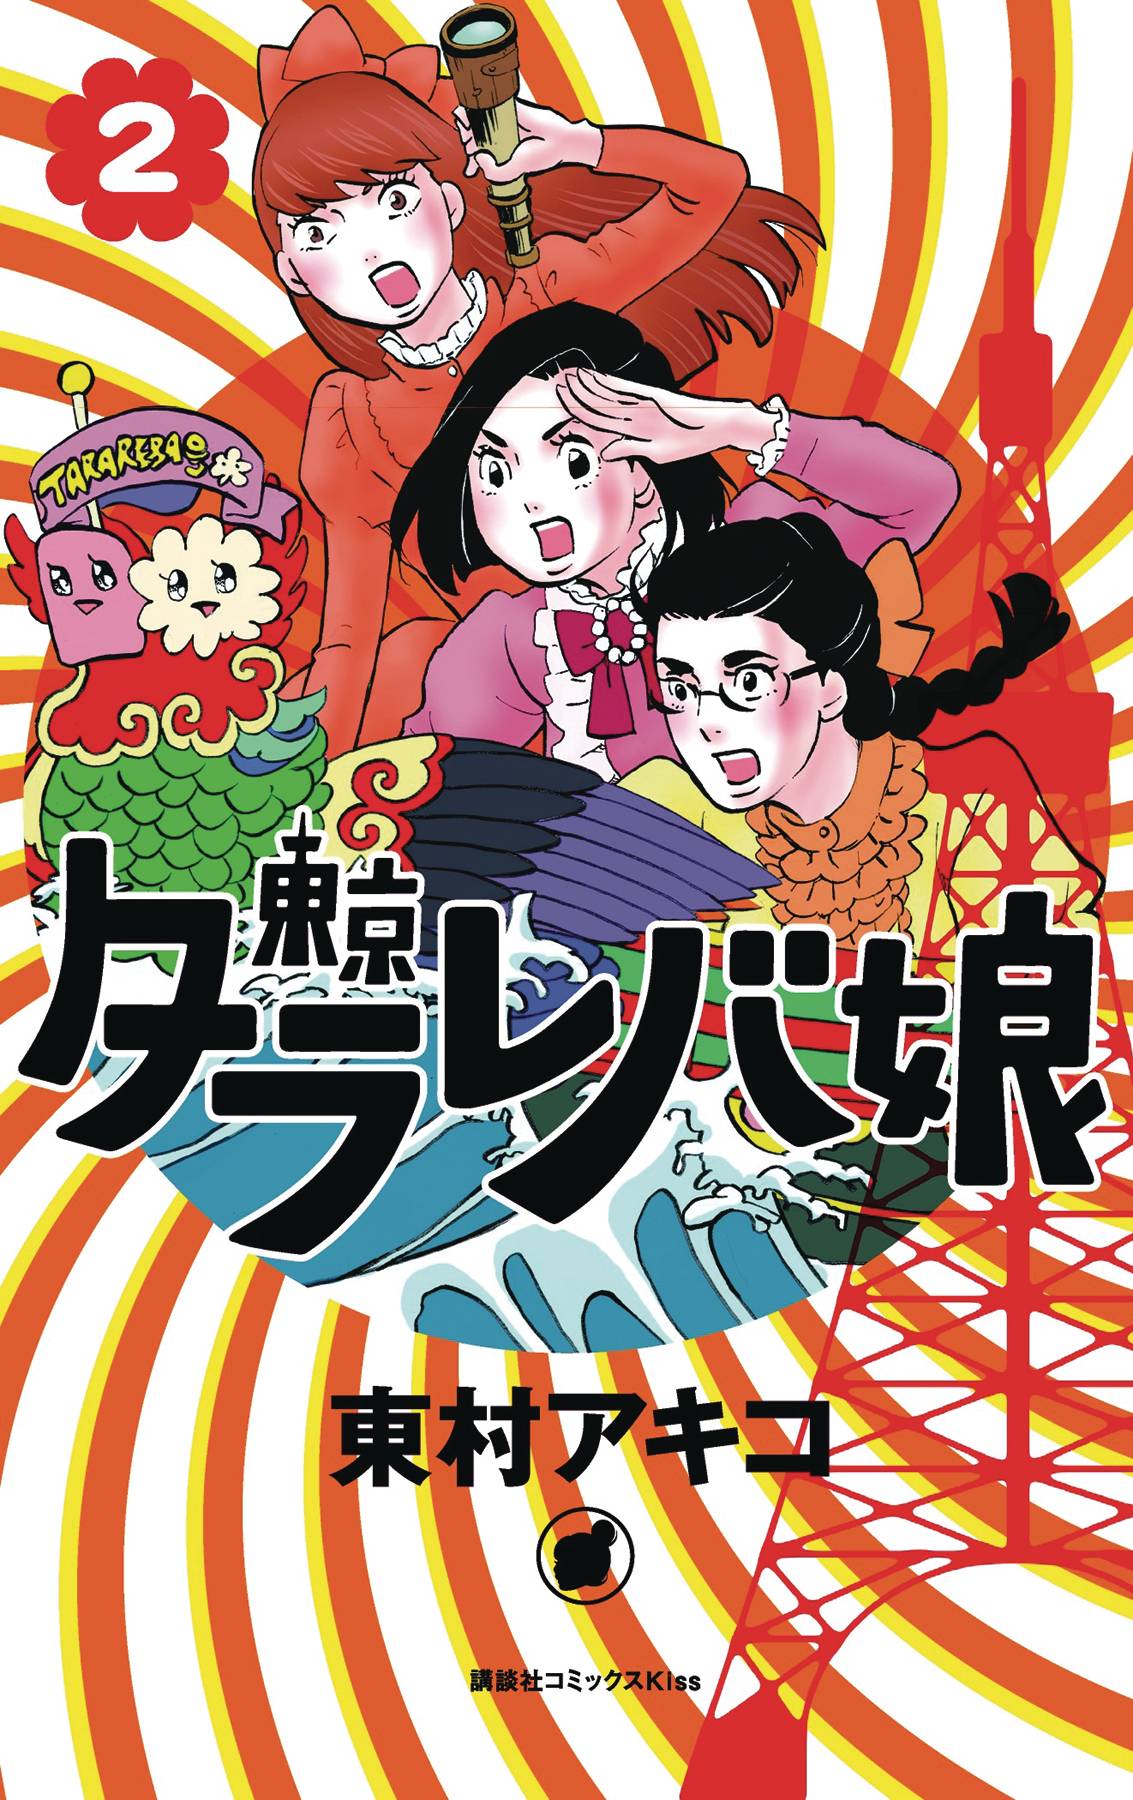 Tokyo Tarareba Girls Manga Volume 2